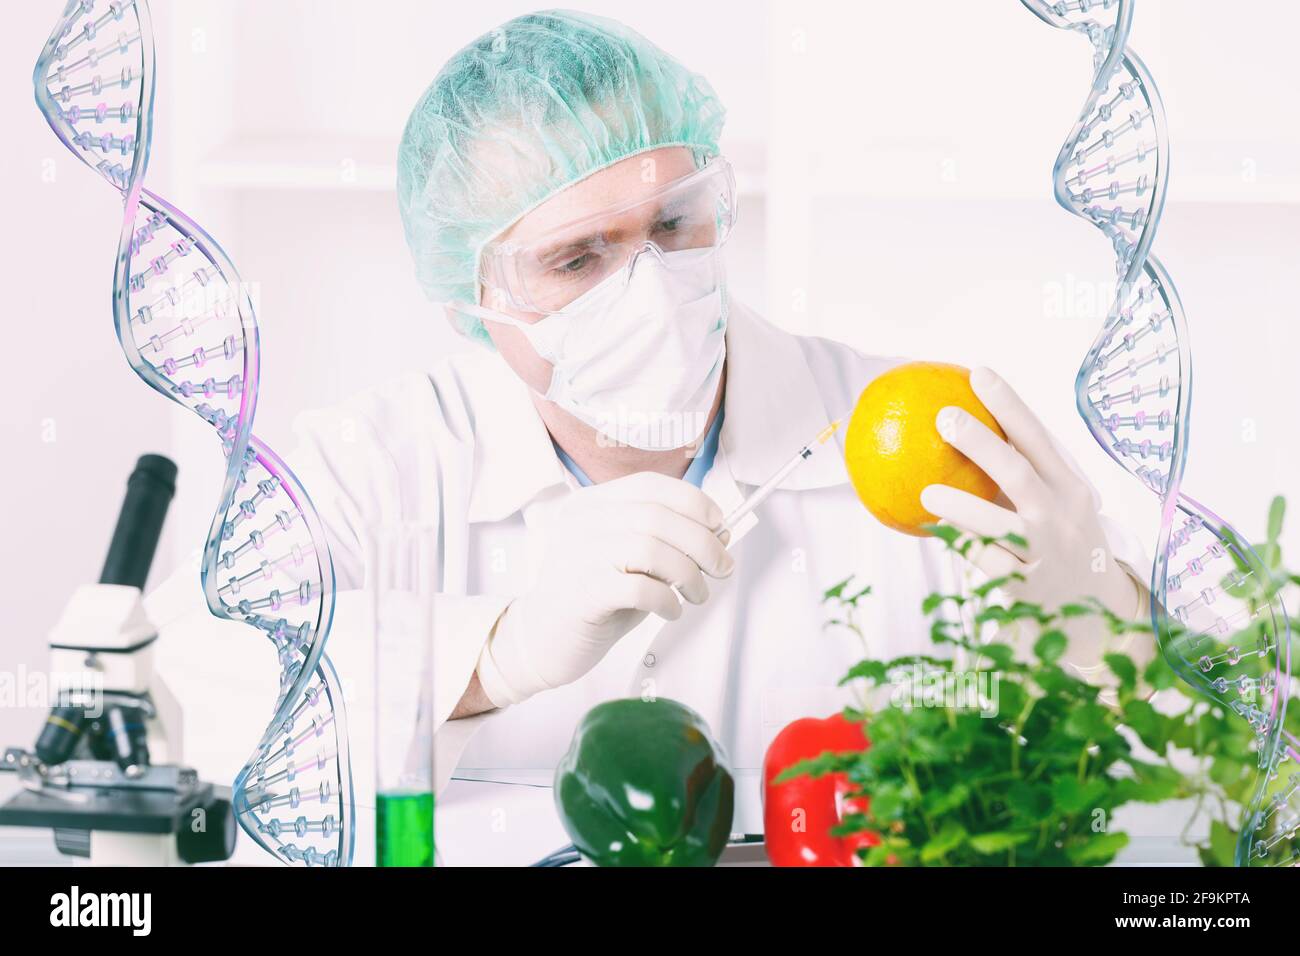 Chercheur avec des plantes OGM. L'organisme génétiquement modifié ou GEO est une plante dont le matériel génétique a été modifié à l'aide de la technique de génie génétique Banque D'Images